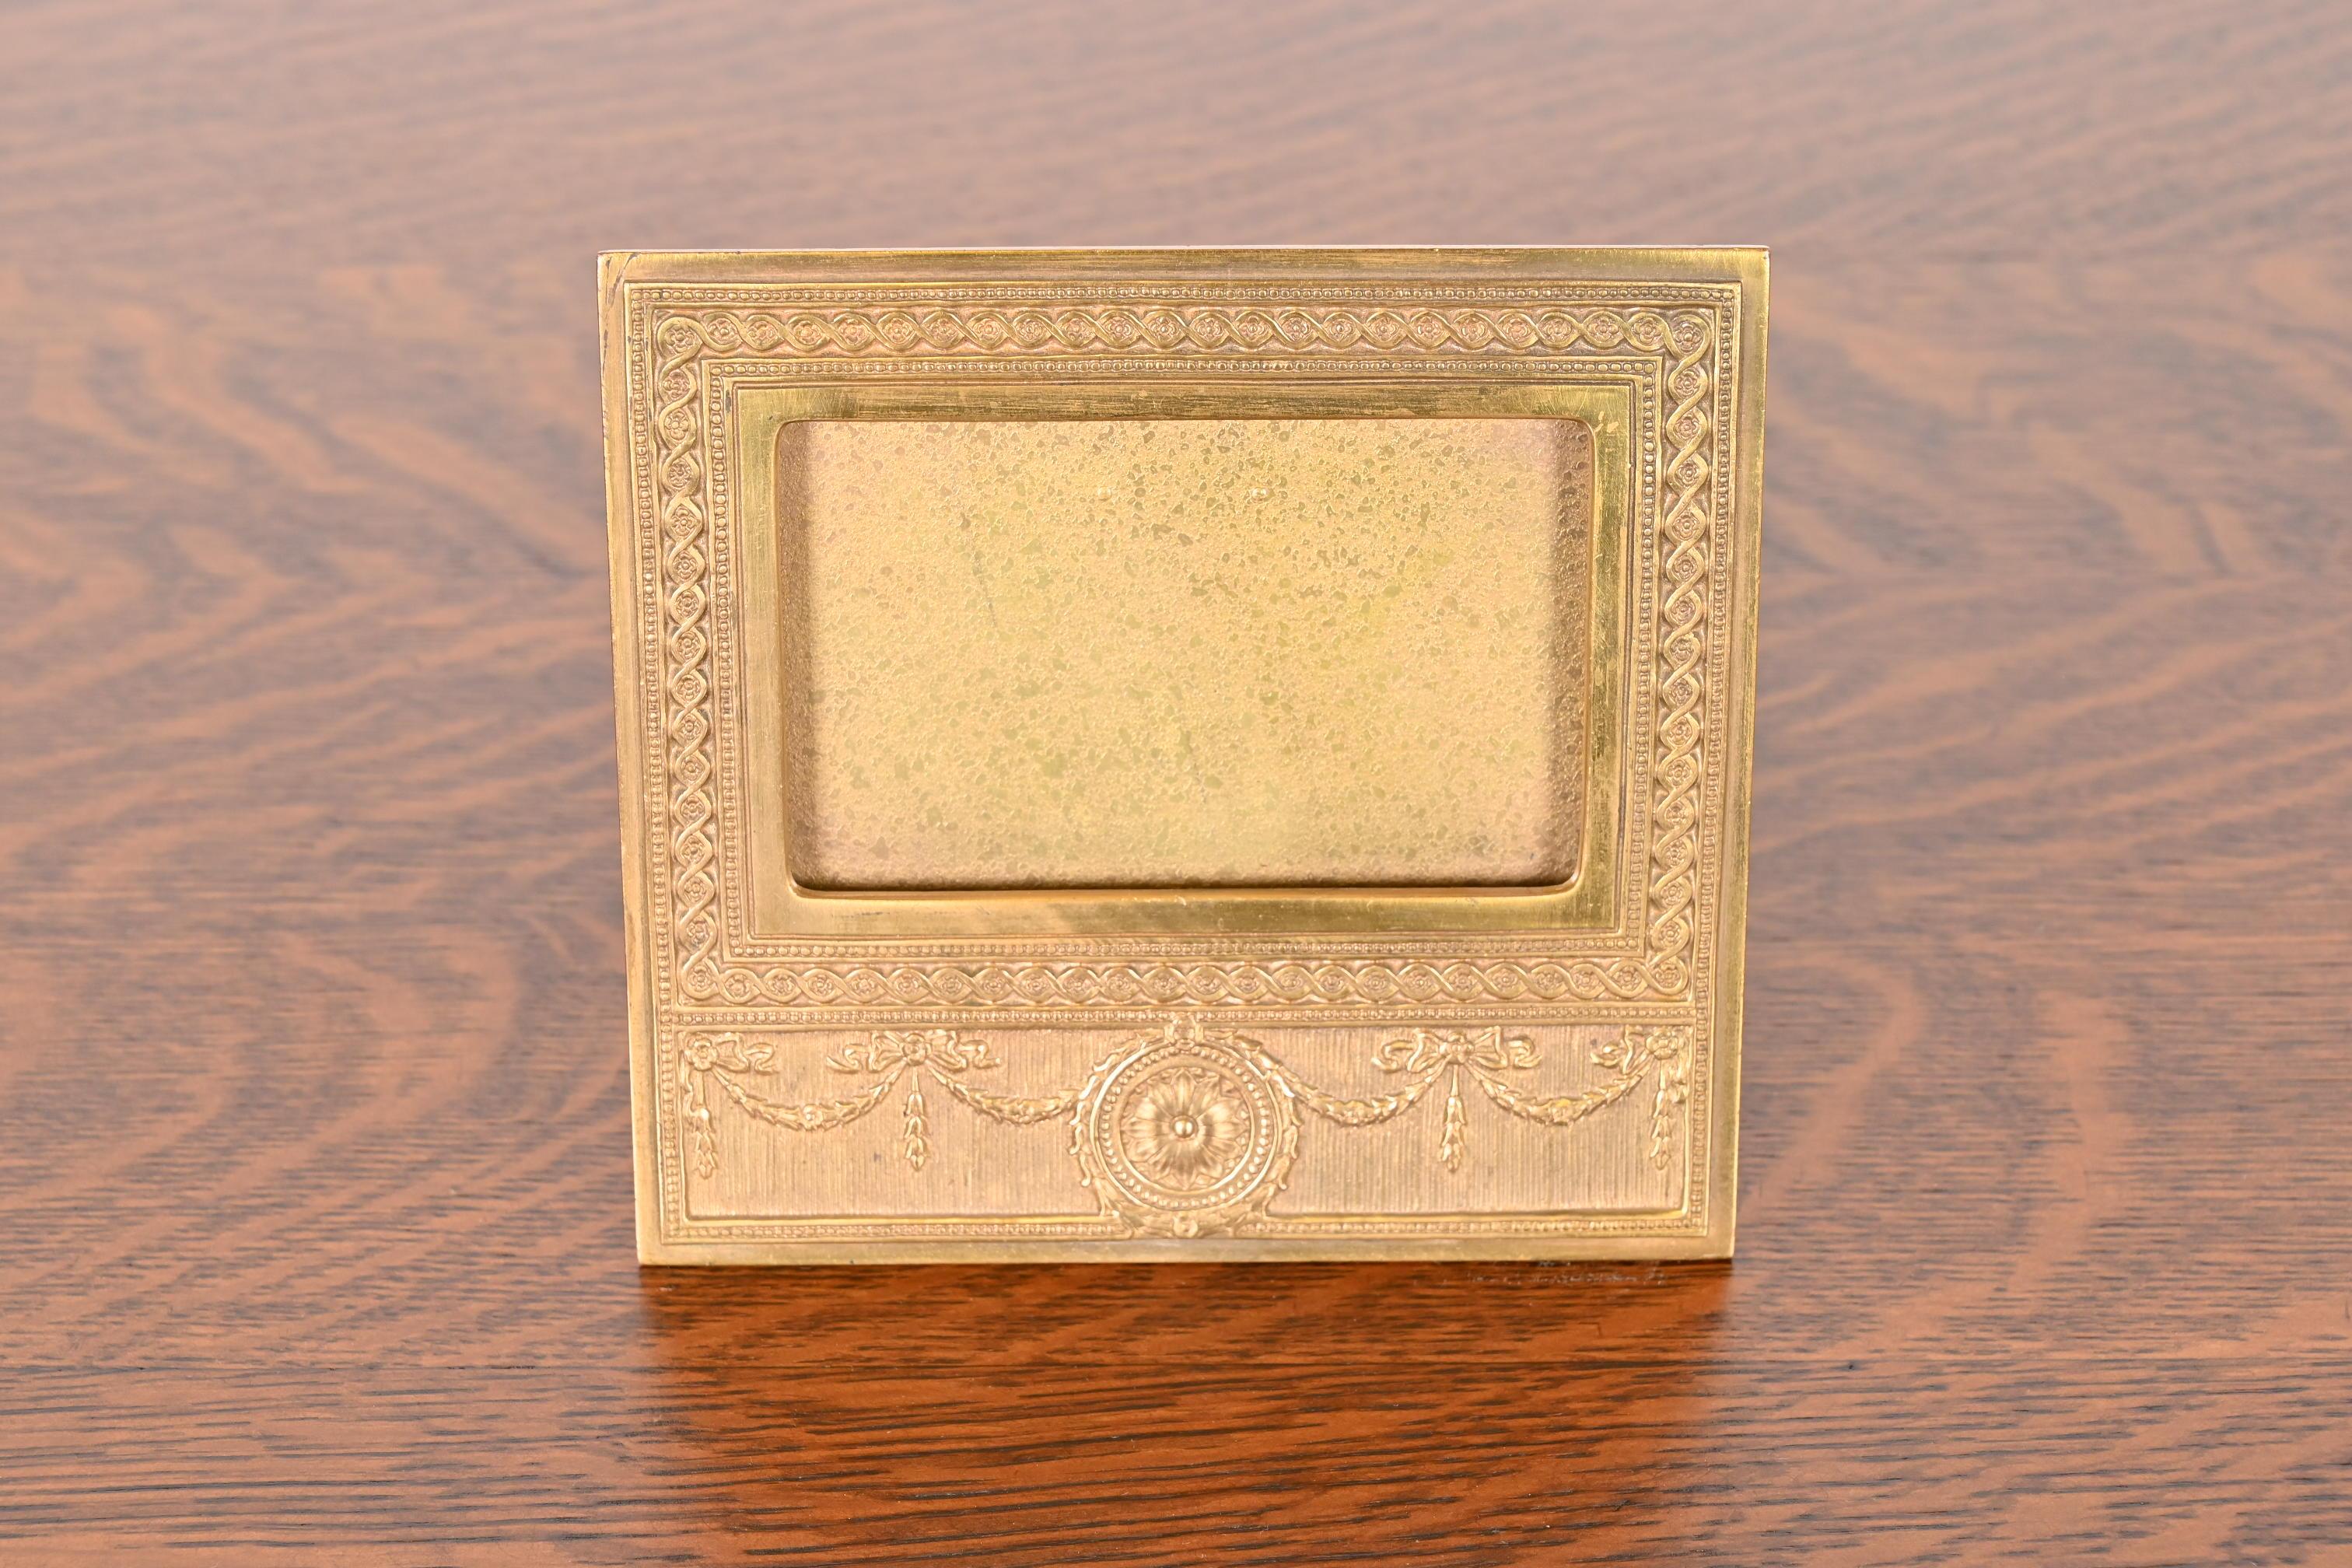 Eine wunderschöne antike vergoldete Bronze neoklassischen oder Adam Stil Schreibtisch Kalenderrahmen oder Bilderrahmen

Von Tiffany Studios (signiert auf der Rückseite)

New York, USA, Anfang des 20. Jahrhunderts

Maße: 6,38 